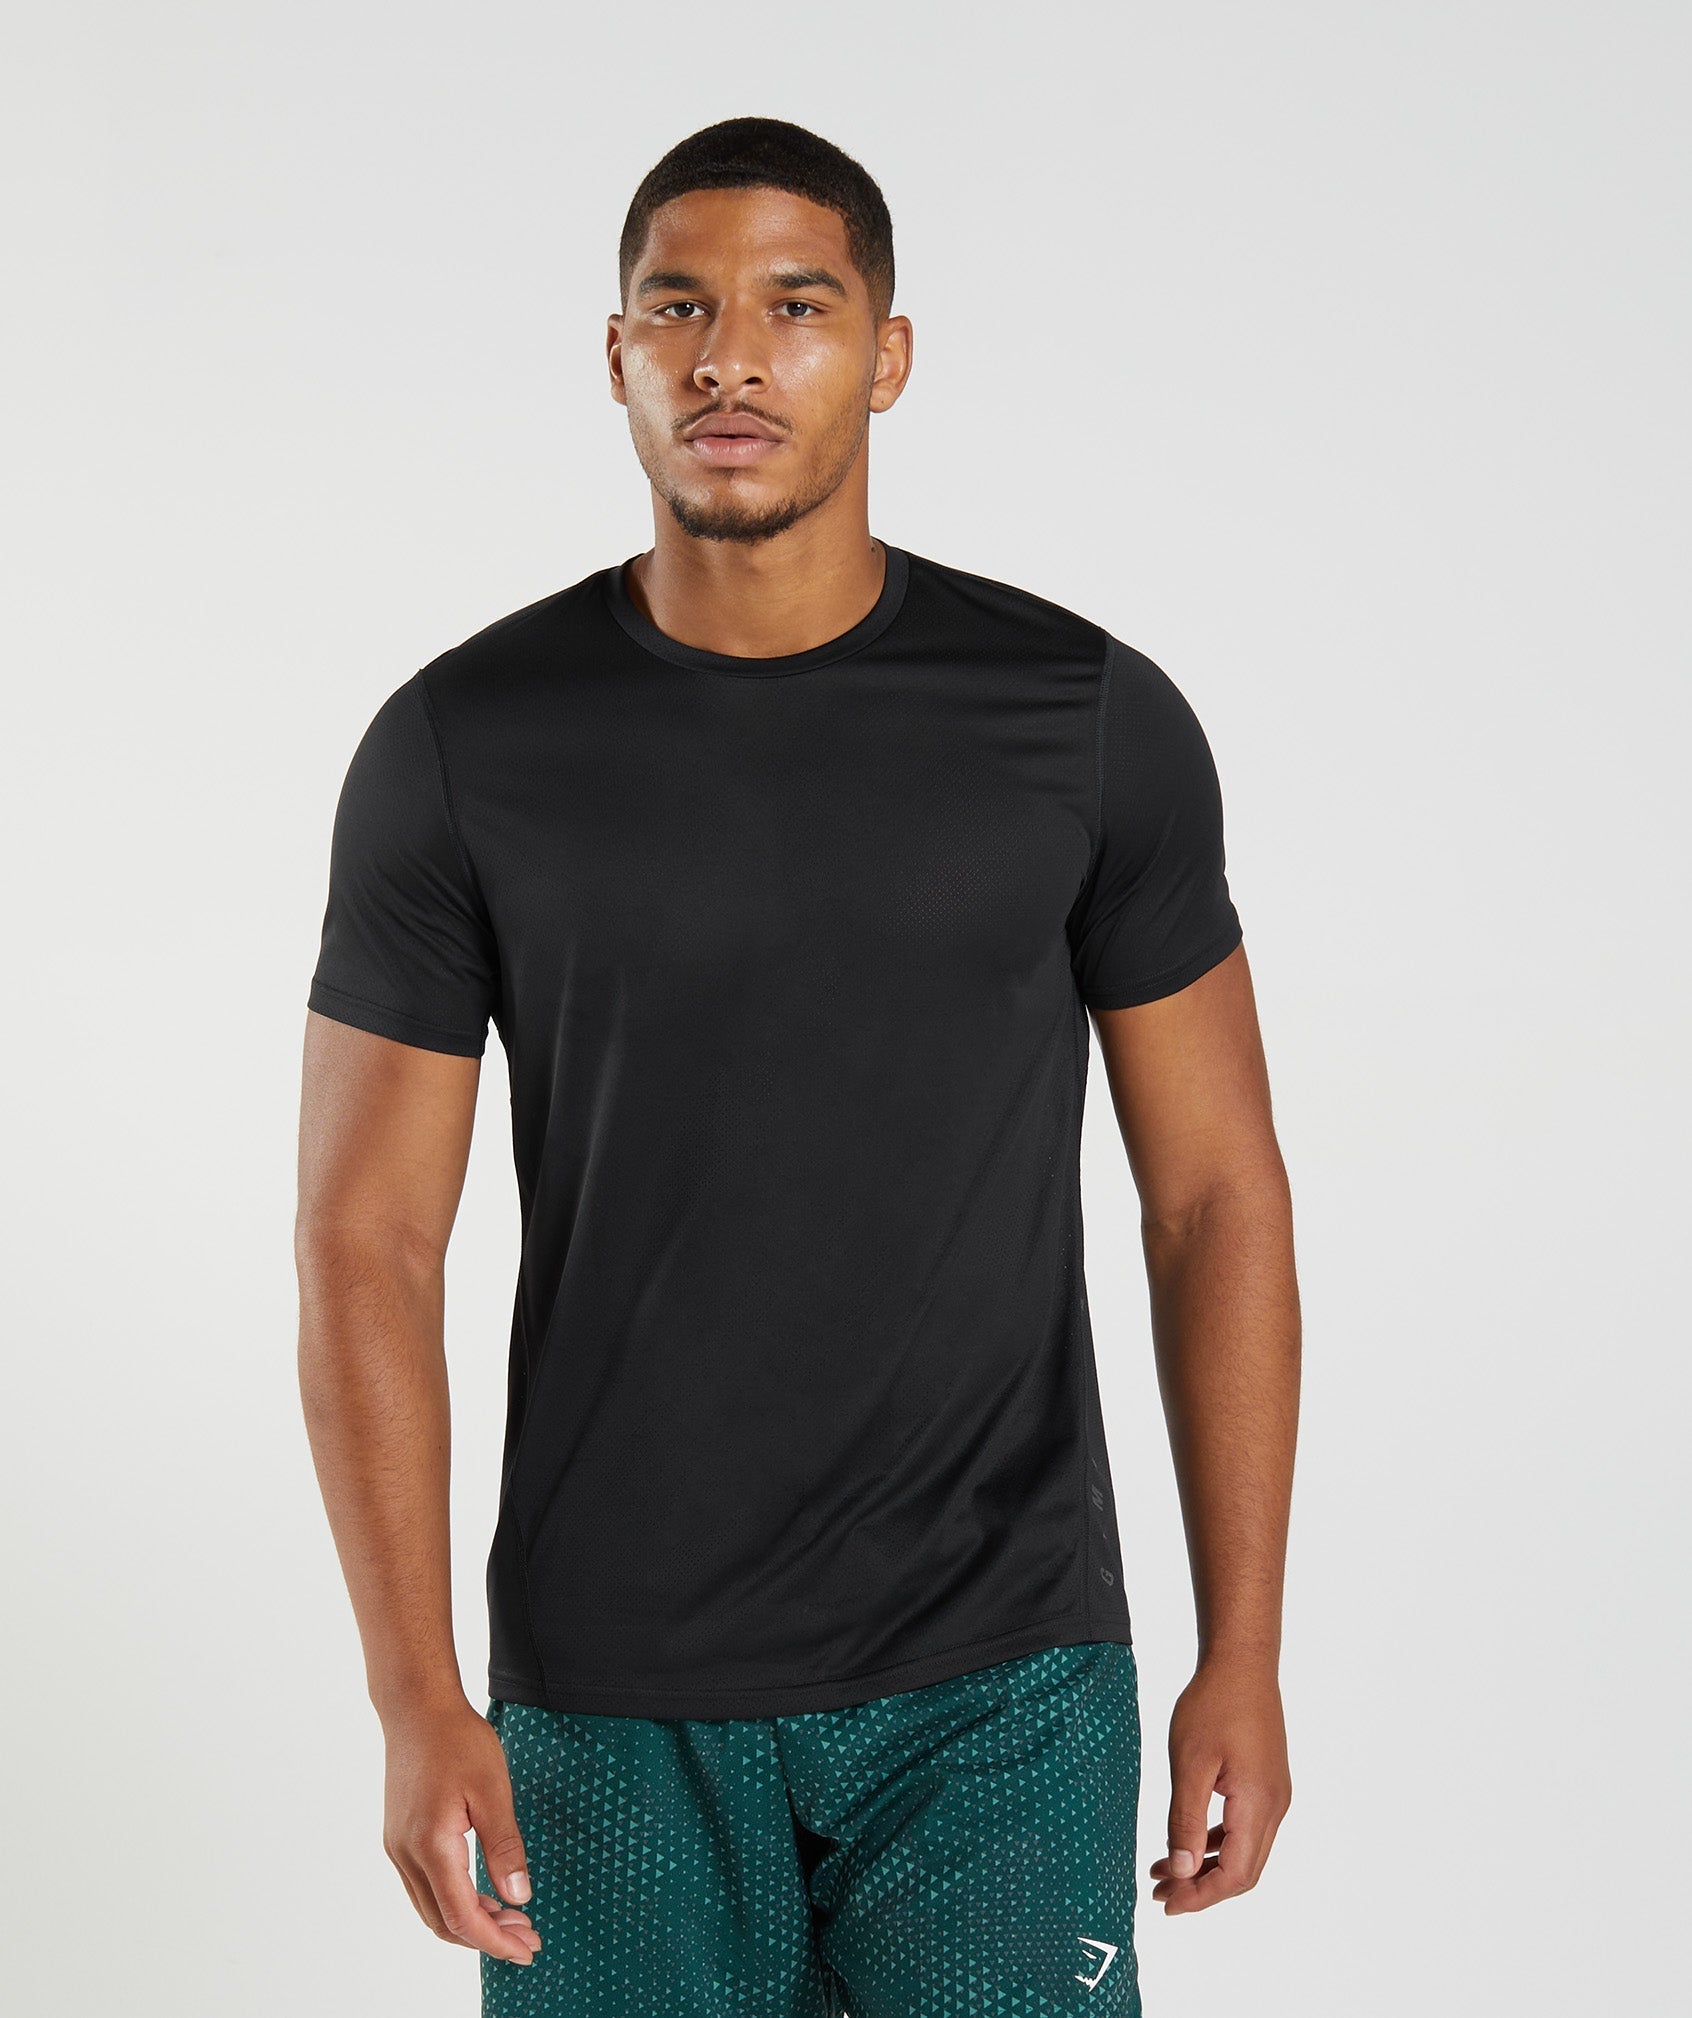 Buy Men's Round Neck Slim Fit Gym Sports Tshirt (Medium, Grey) at